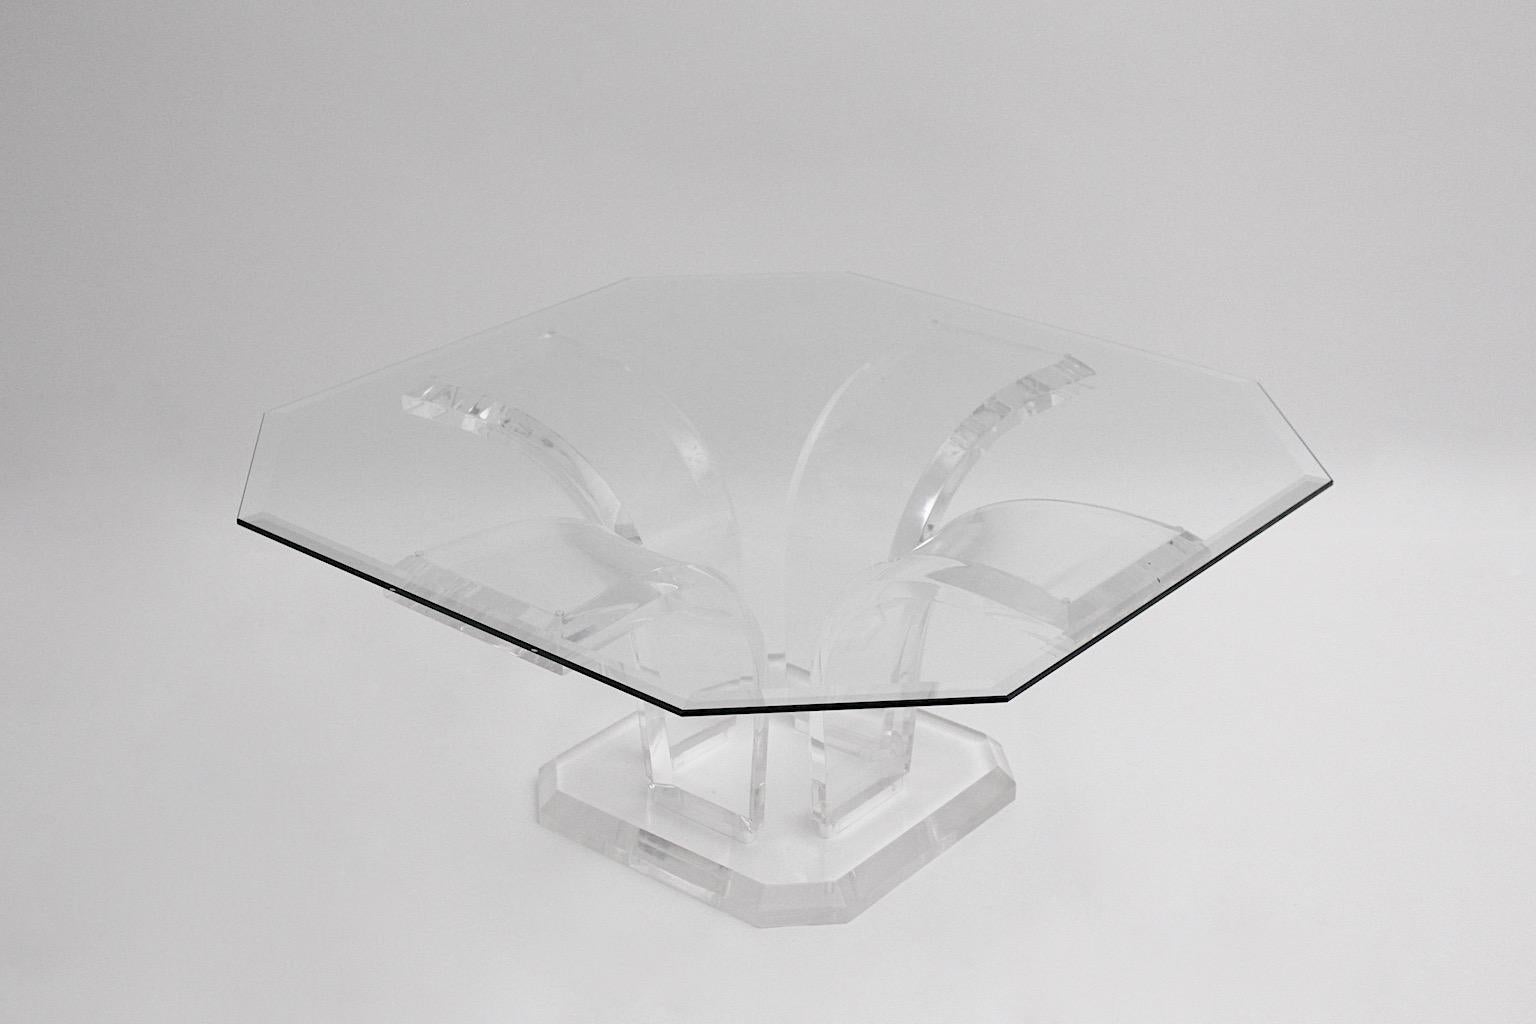 Table basse ou table de canapé vintage de forme rectangulaire en lucite et verre attribuée à Charles Hollis Jones vers 1970.
Cette magnifique table de canapé se compose d'une base en matériaux transparents tels que la lucite et d'une plaque de verre